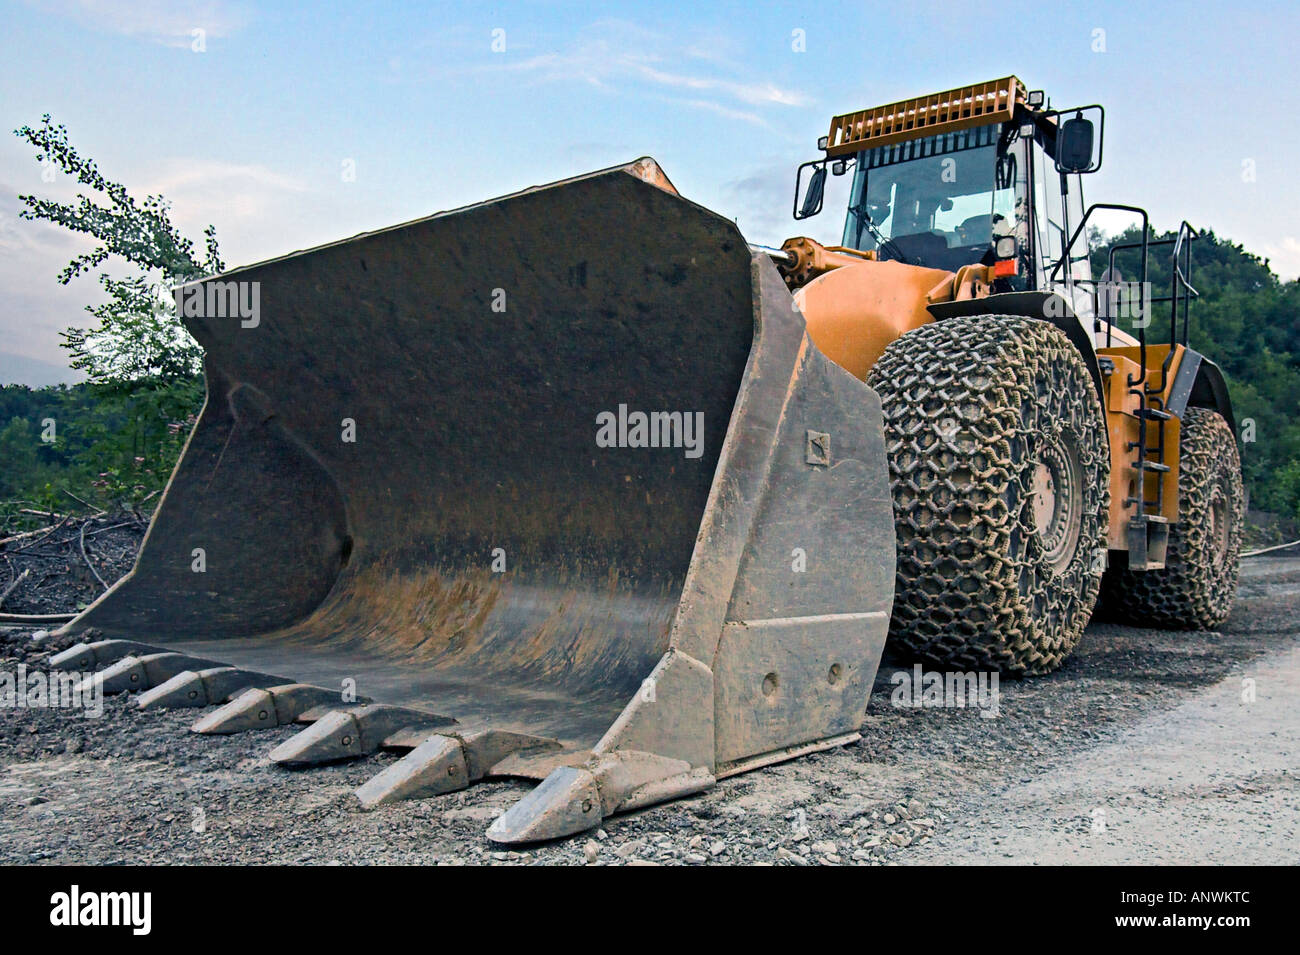 Großer Radlader mit Schneeketten in einem Steinbruch Stockfotografie - Alamy